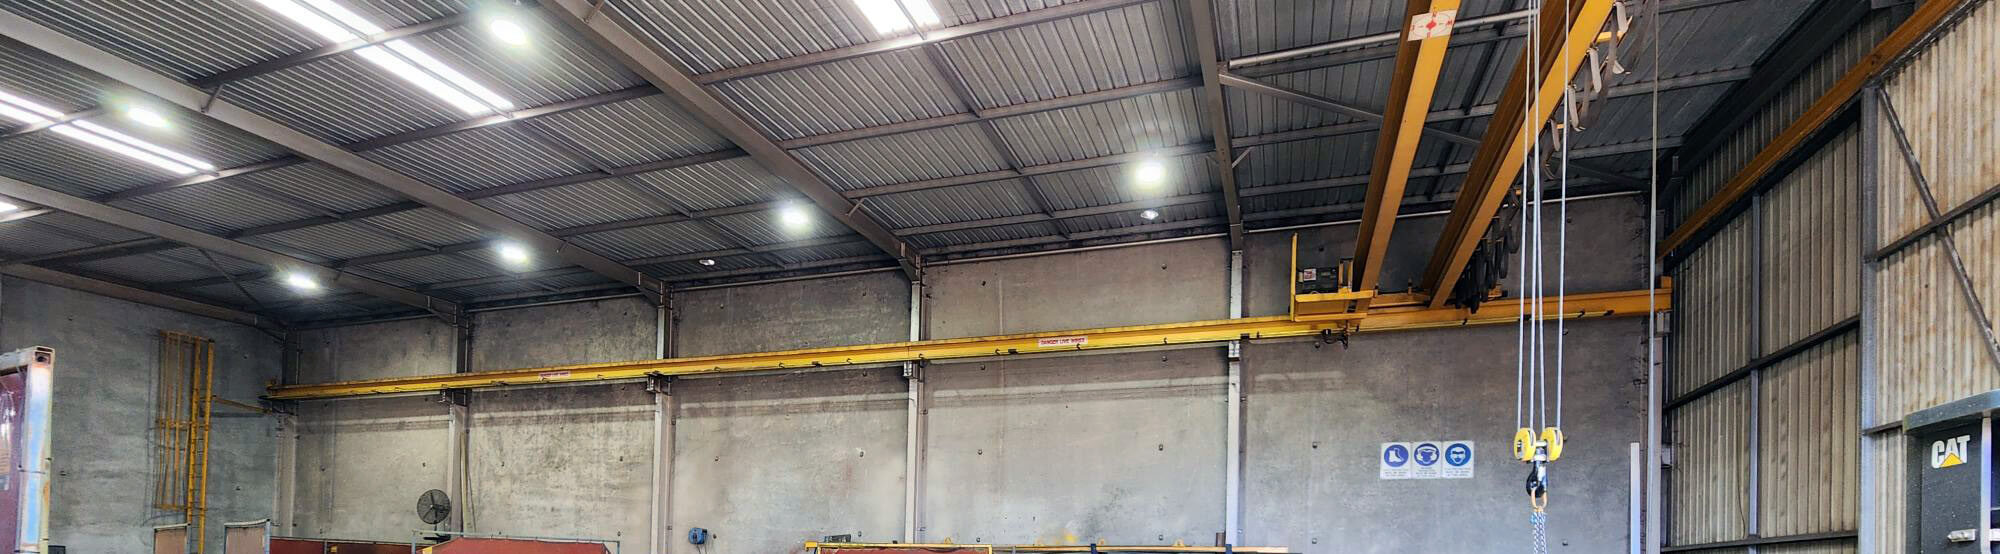 LED high bay lights installed inside industrial steel workshop